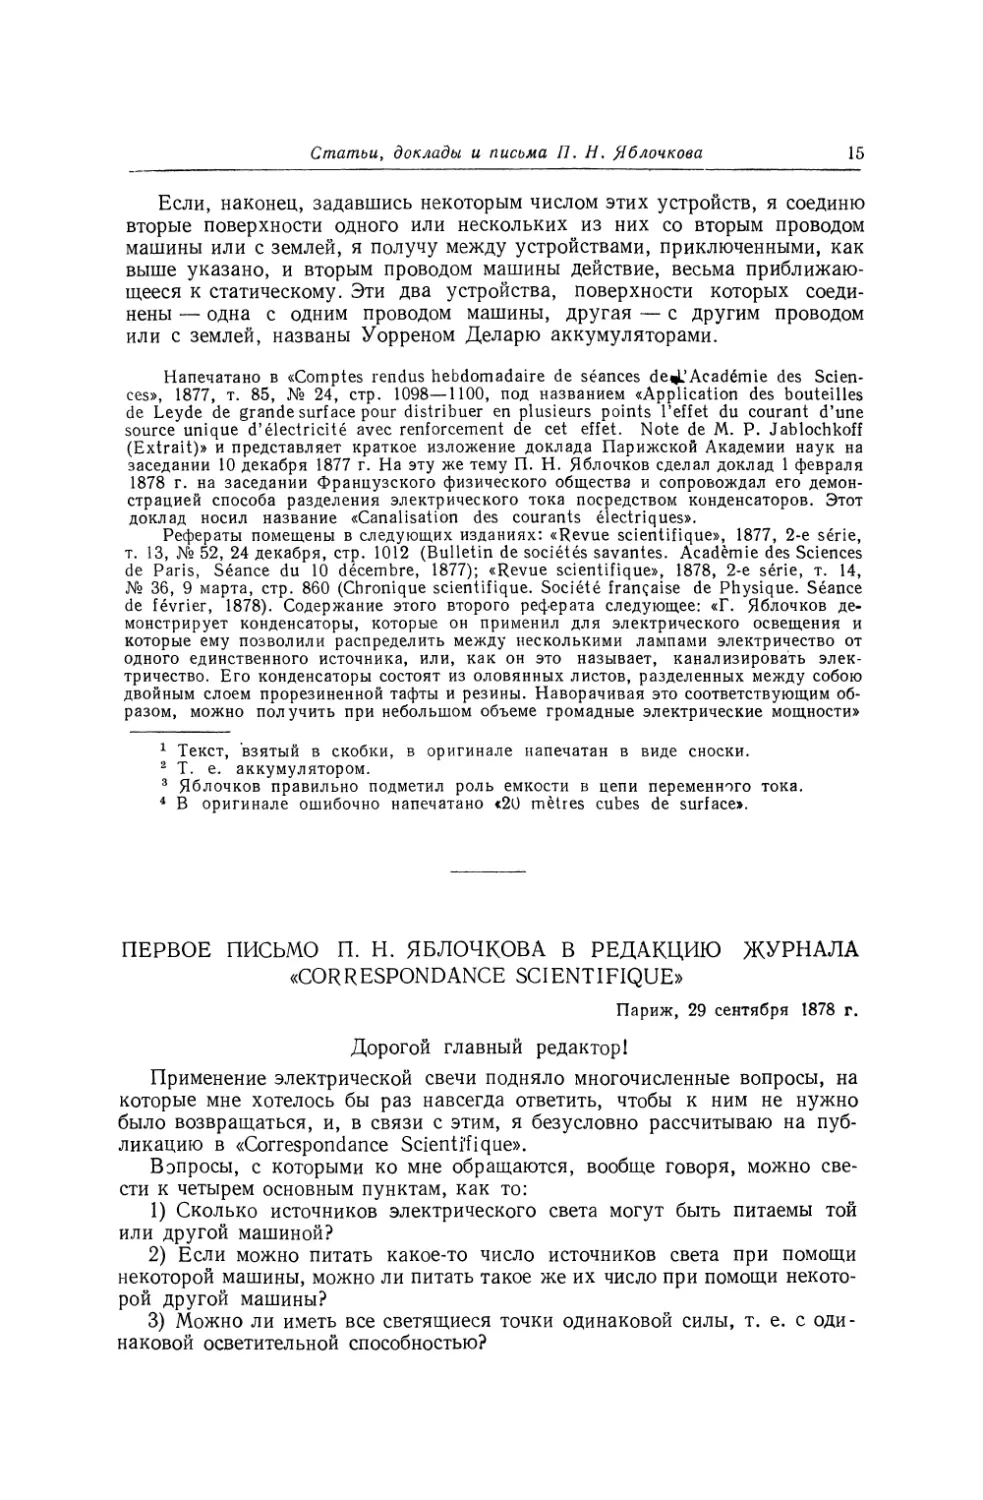 Первое письмо П. Н. Яблочкова в редакцию журнала «Correspondance Scientifique»